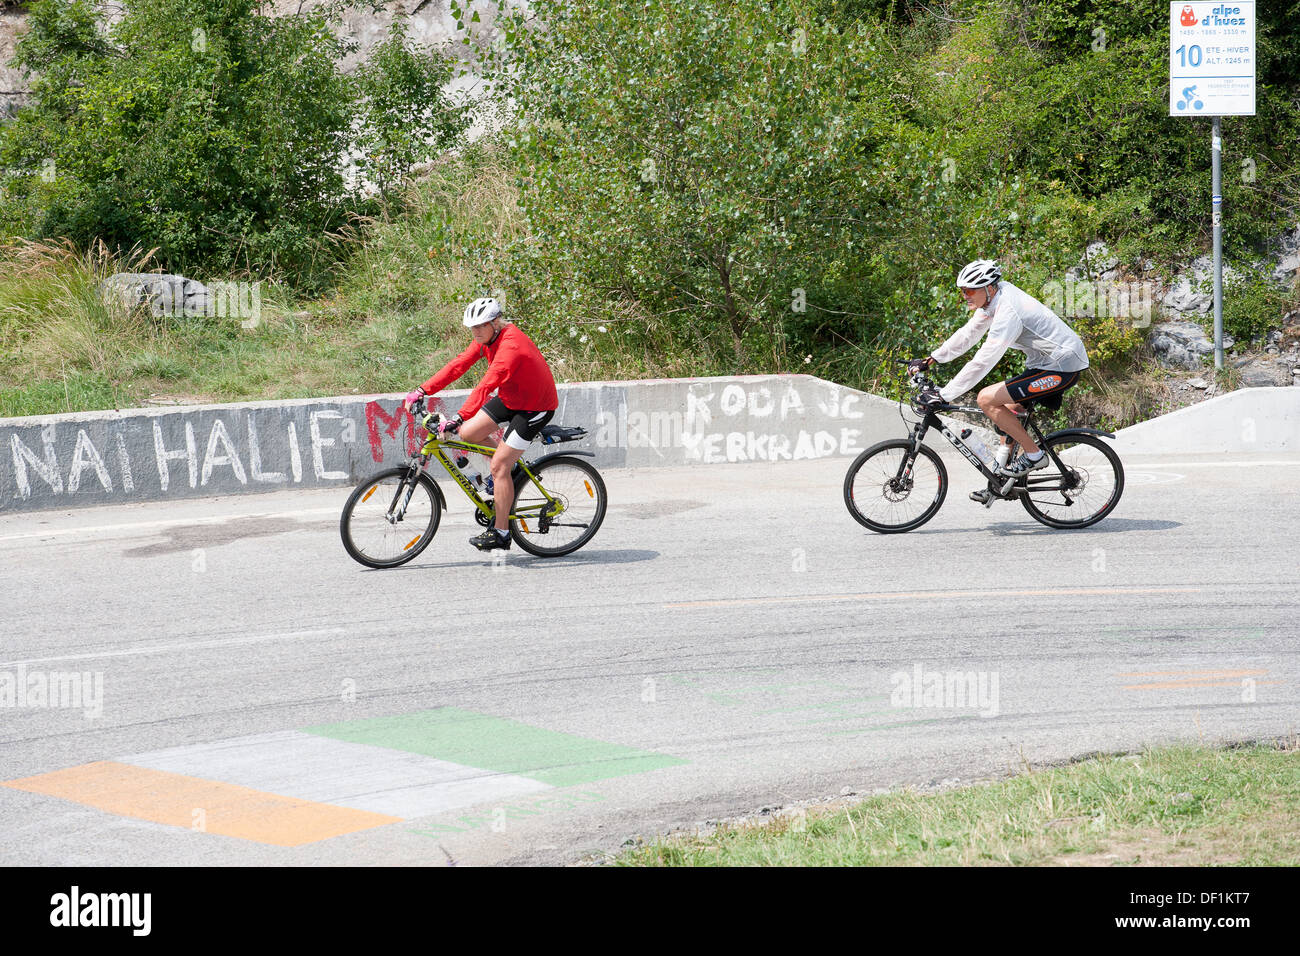 Circonscription cycliste pédalant barrière route déterminée Banque D'Images